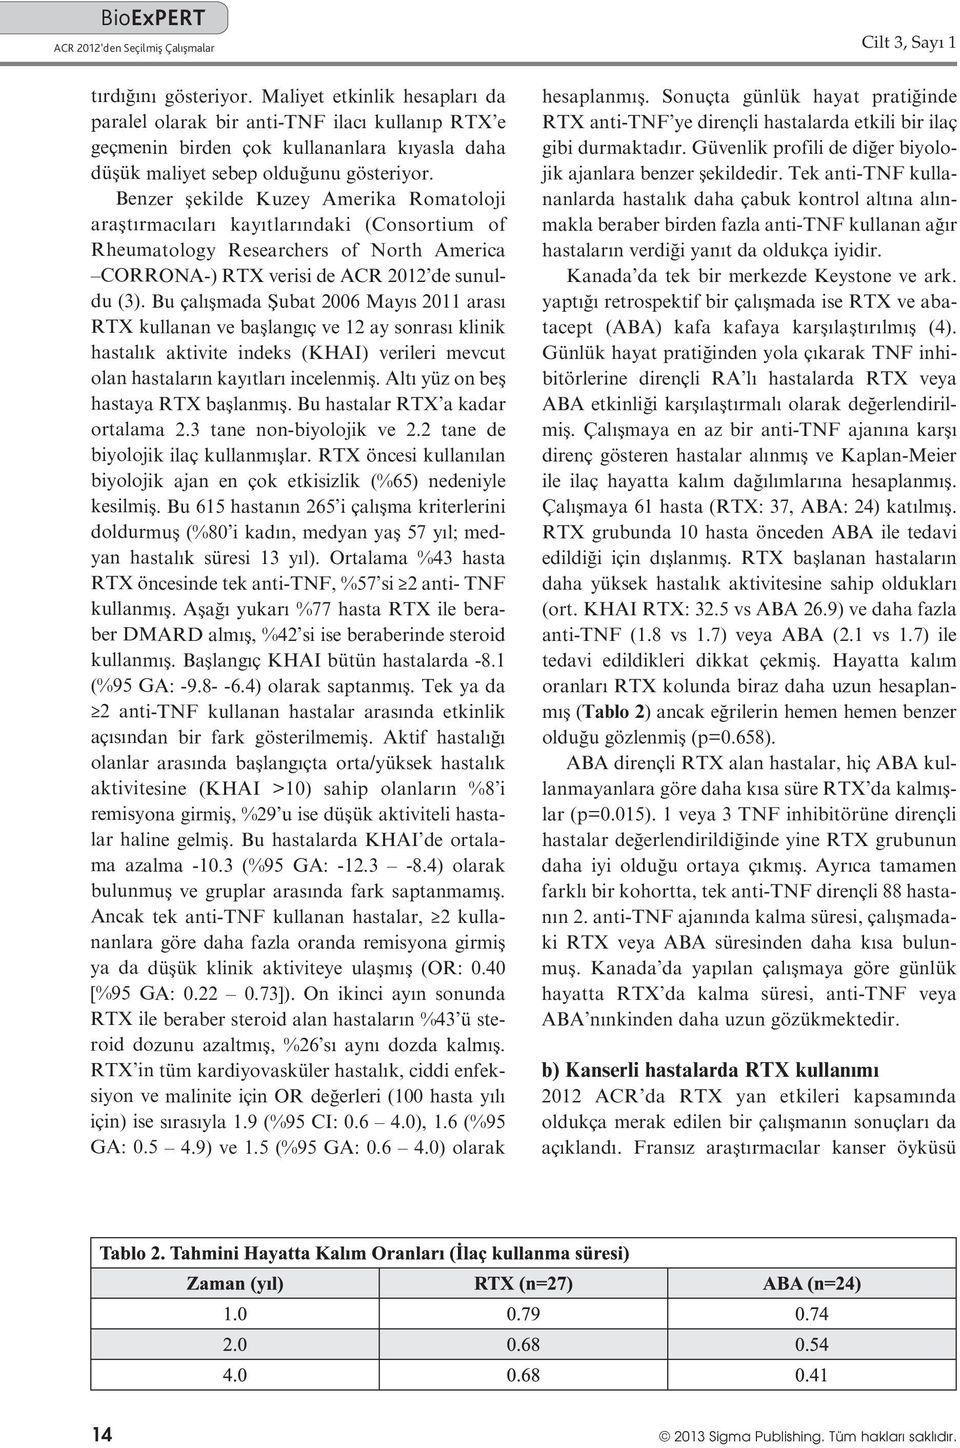 Benzer şekilde Kuzey Amerika Romatoloji araştırmacıları kayıtlarındaki (Consortium of Rheumatology Researchers of North America CORRONA-) RTX verisi de ACR 2012 de sunuldu (3).